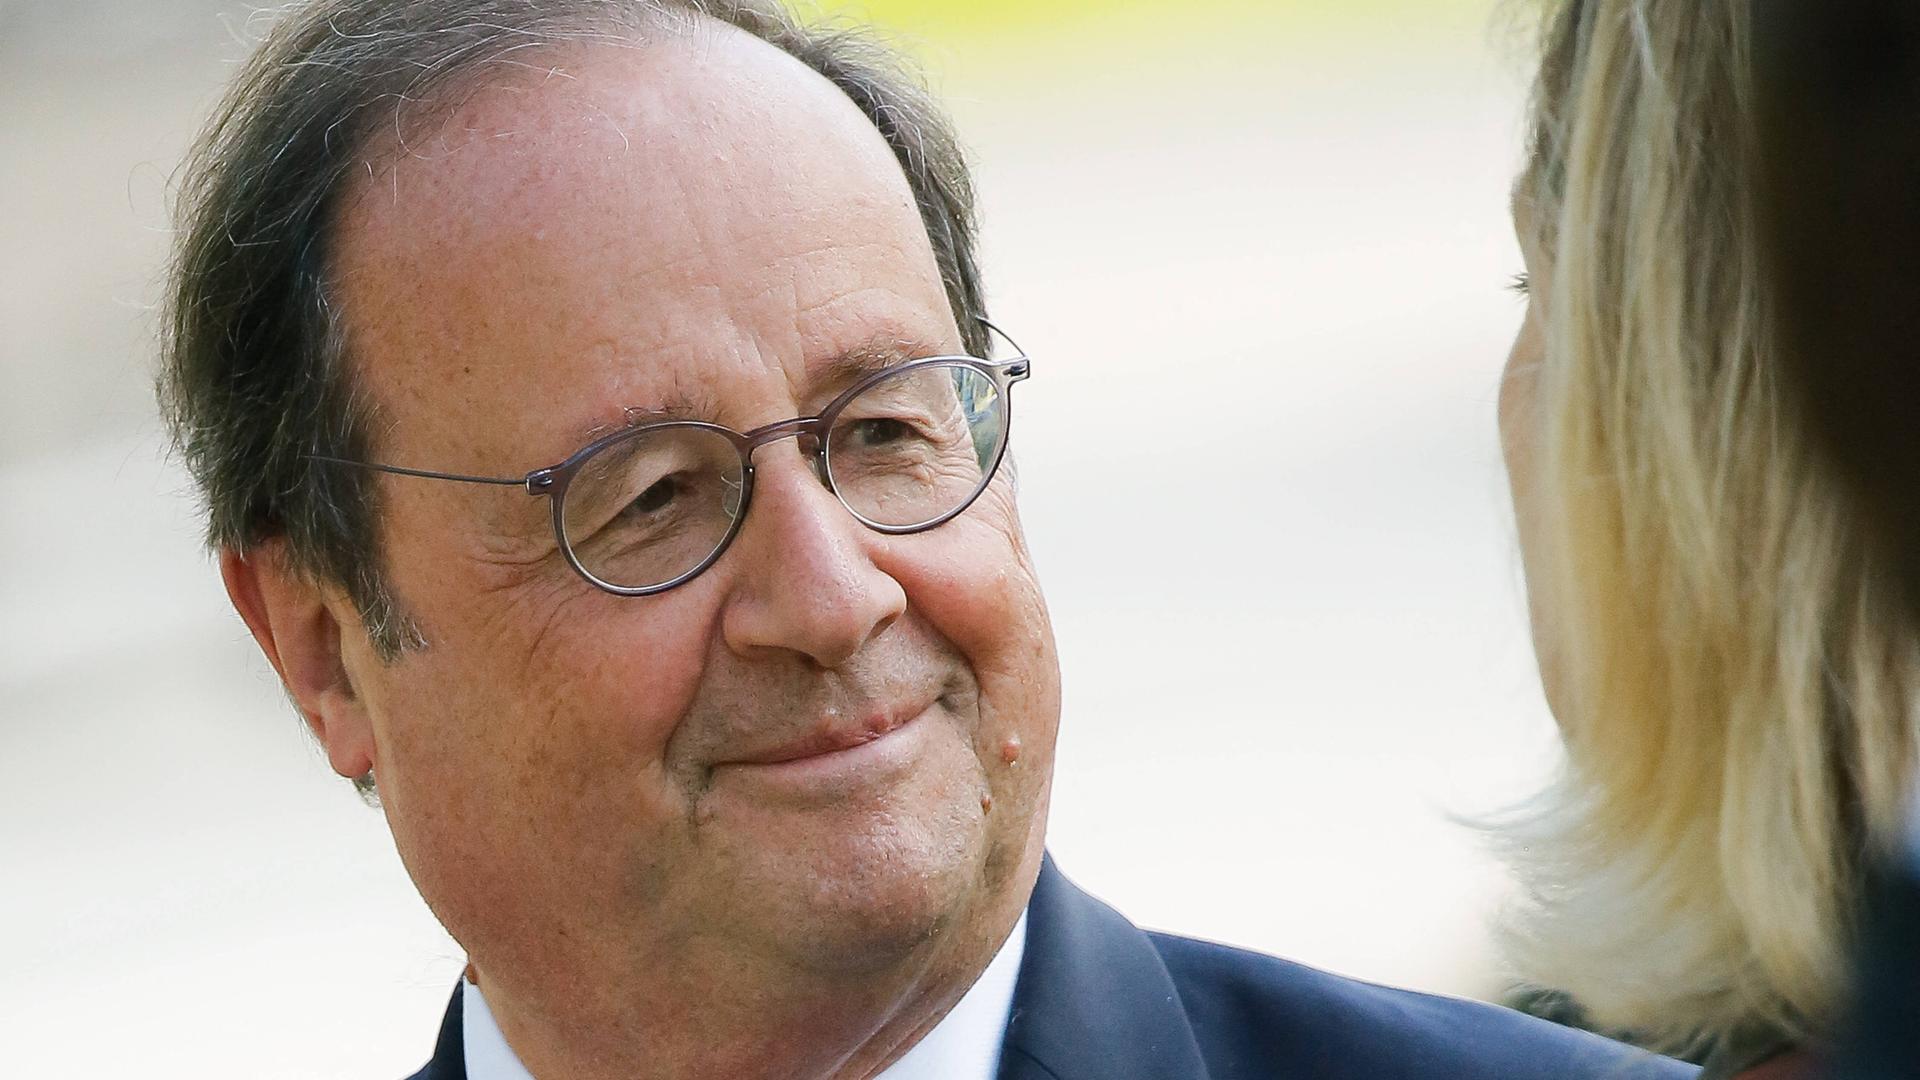 François Hollande im Porträt, er lächelt und schaut zur Seite. 